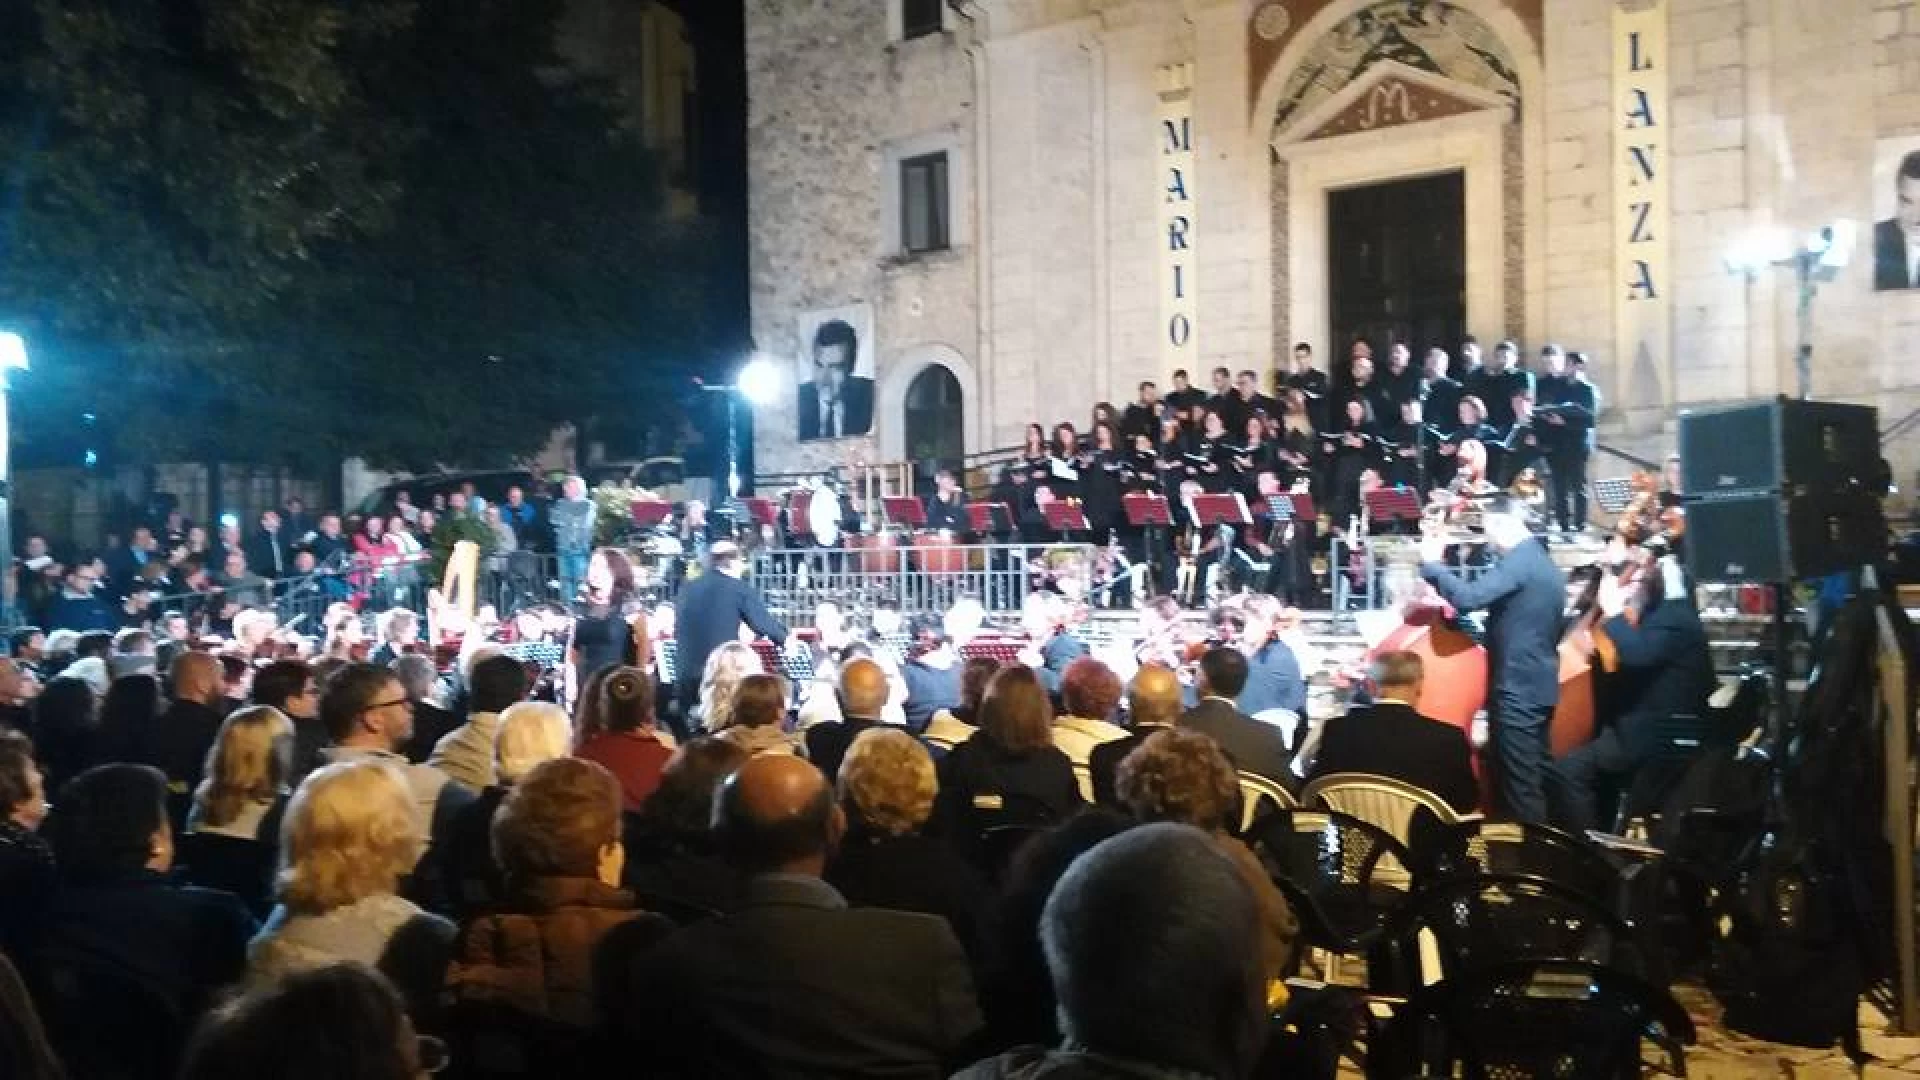 Festival Mario Lanza, il bilancio del sindaco di Filignano Lorenzo Coia. “Manifestazione unica nel suo genere. Ora aspettiamo quanto promesso dalla Regione Molise”.